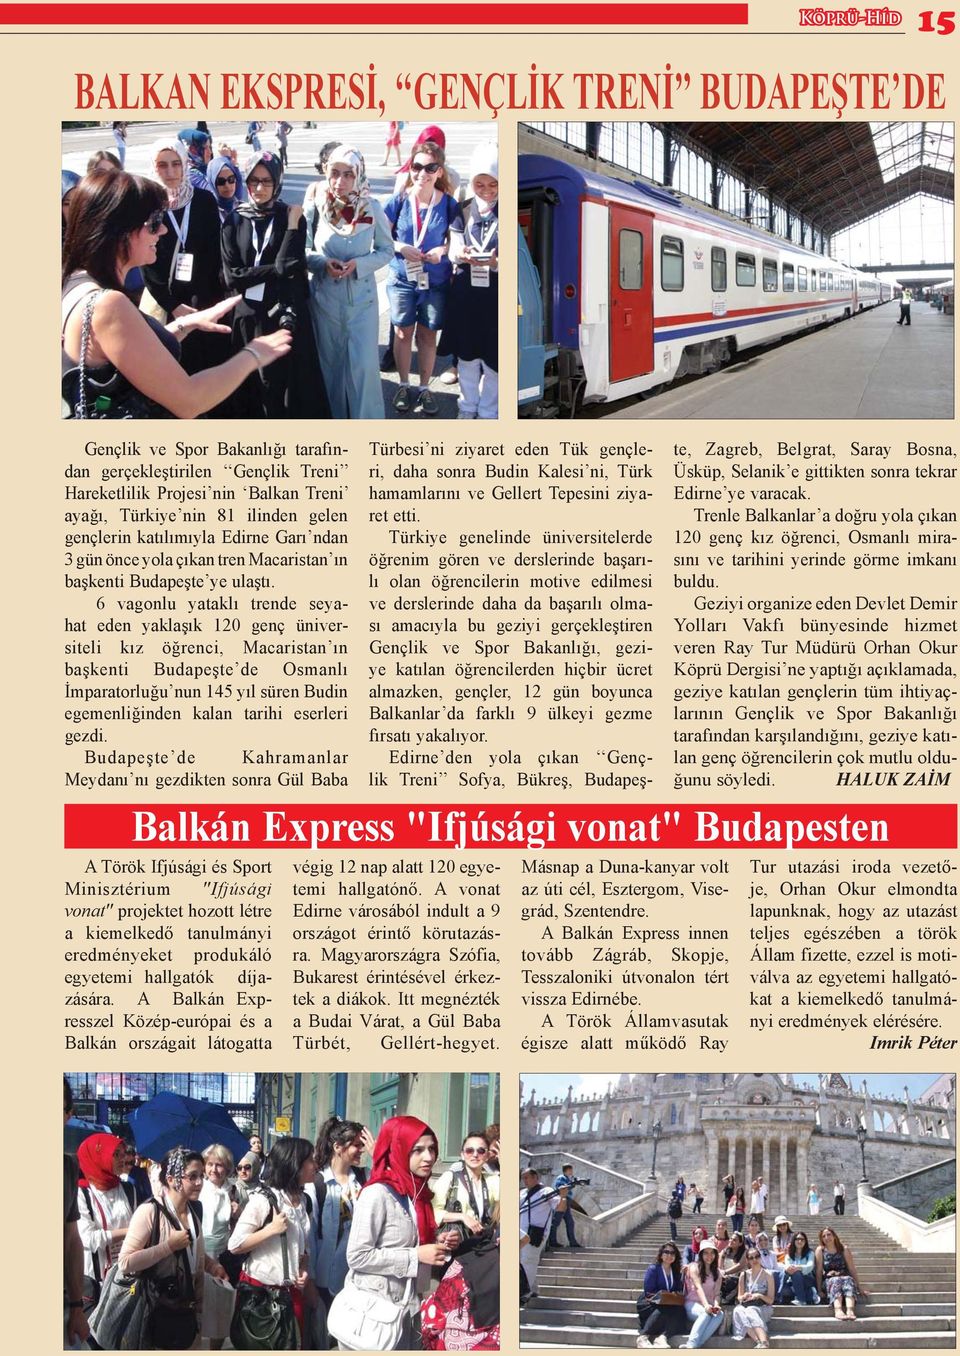 6 vagonlu yataklı trende seyahat eden yaklaşık 120 genç üniversiteli kız öğrenci, Macaristan ın başkenti Budapeşte de Osmanlı İmparatorluğu nun 145 yıl süren Budin egemenliğinden kalan tarihi